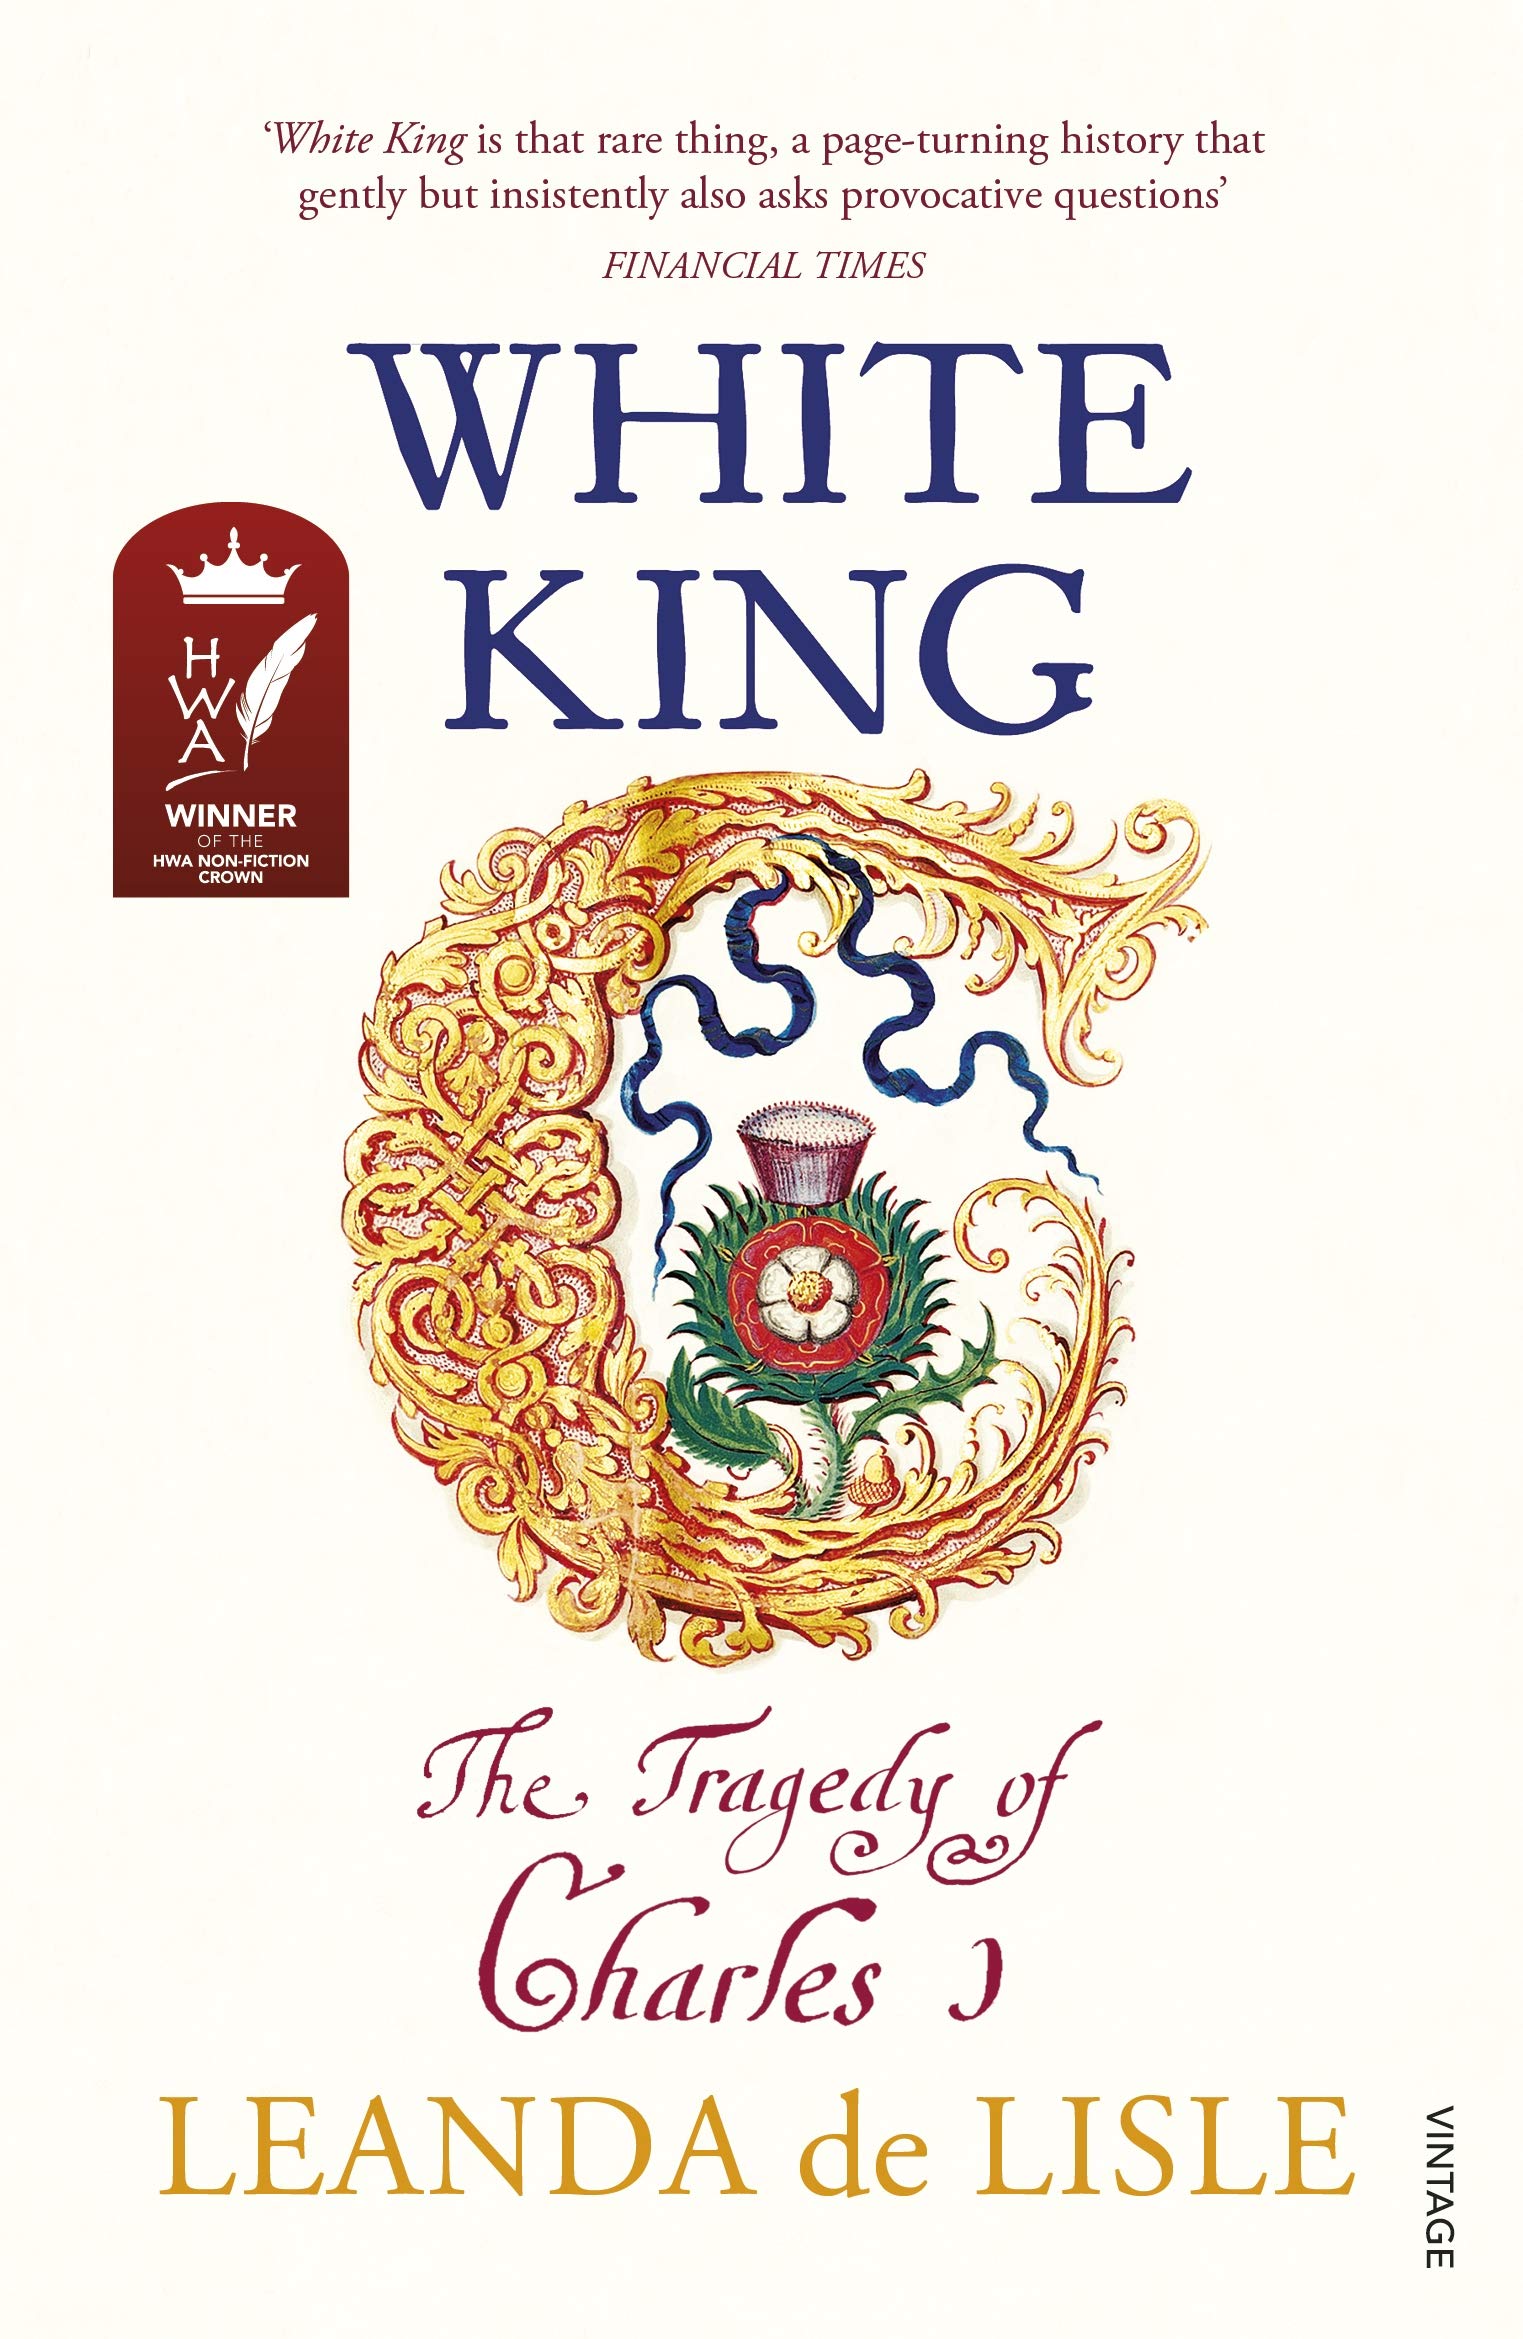 White King | Leanda de Lisle image1